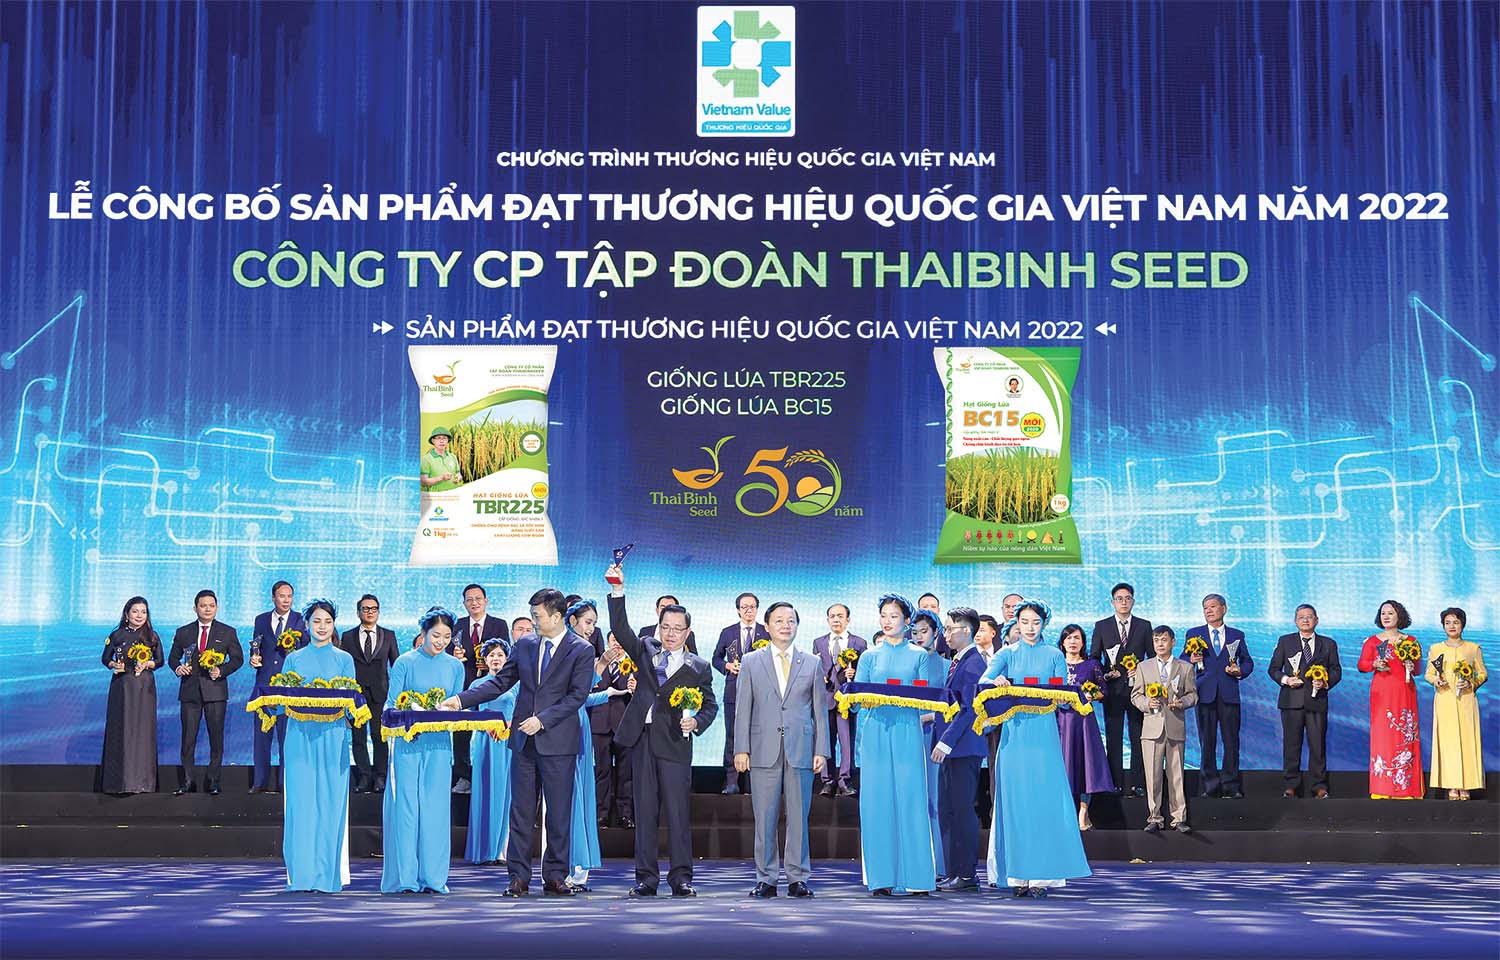 Anh hùng Lao động Trần Mạnh Báo, Chủ tịch HĐQT, Tổng giám đốc ThaiBinh Seed nhận biểu trưng tại Lễ công bố sản phẩm đạt thương hiệu quốc gia Việt Nam 2022